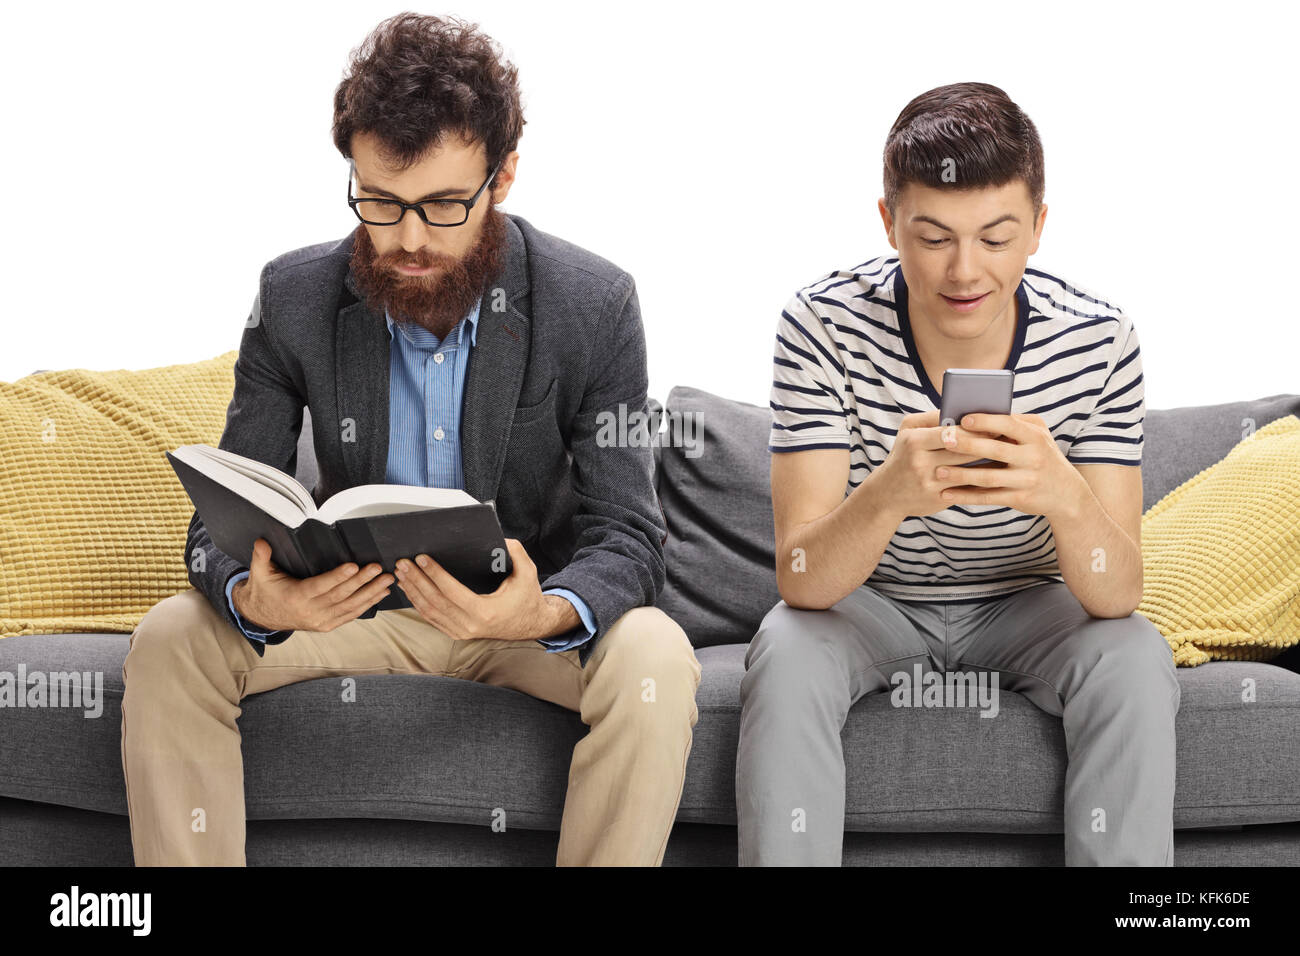 Père assis sur un canapé-lit un livre avec son fils adolescent assis à côté de lui et en regardant un téléphone isolé sur fond blanc Banque D'Images